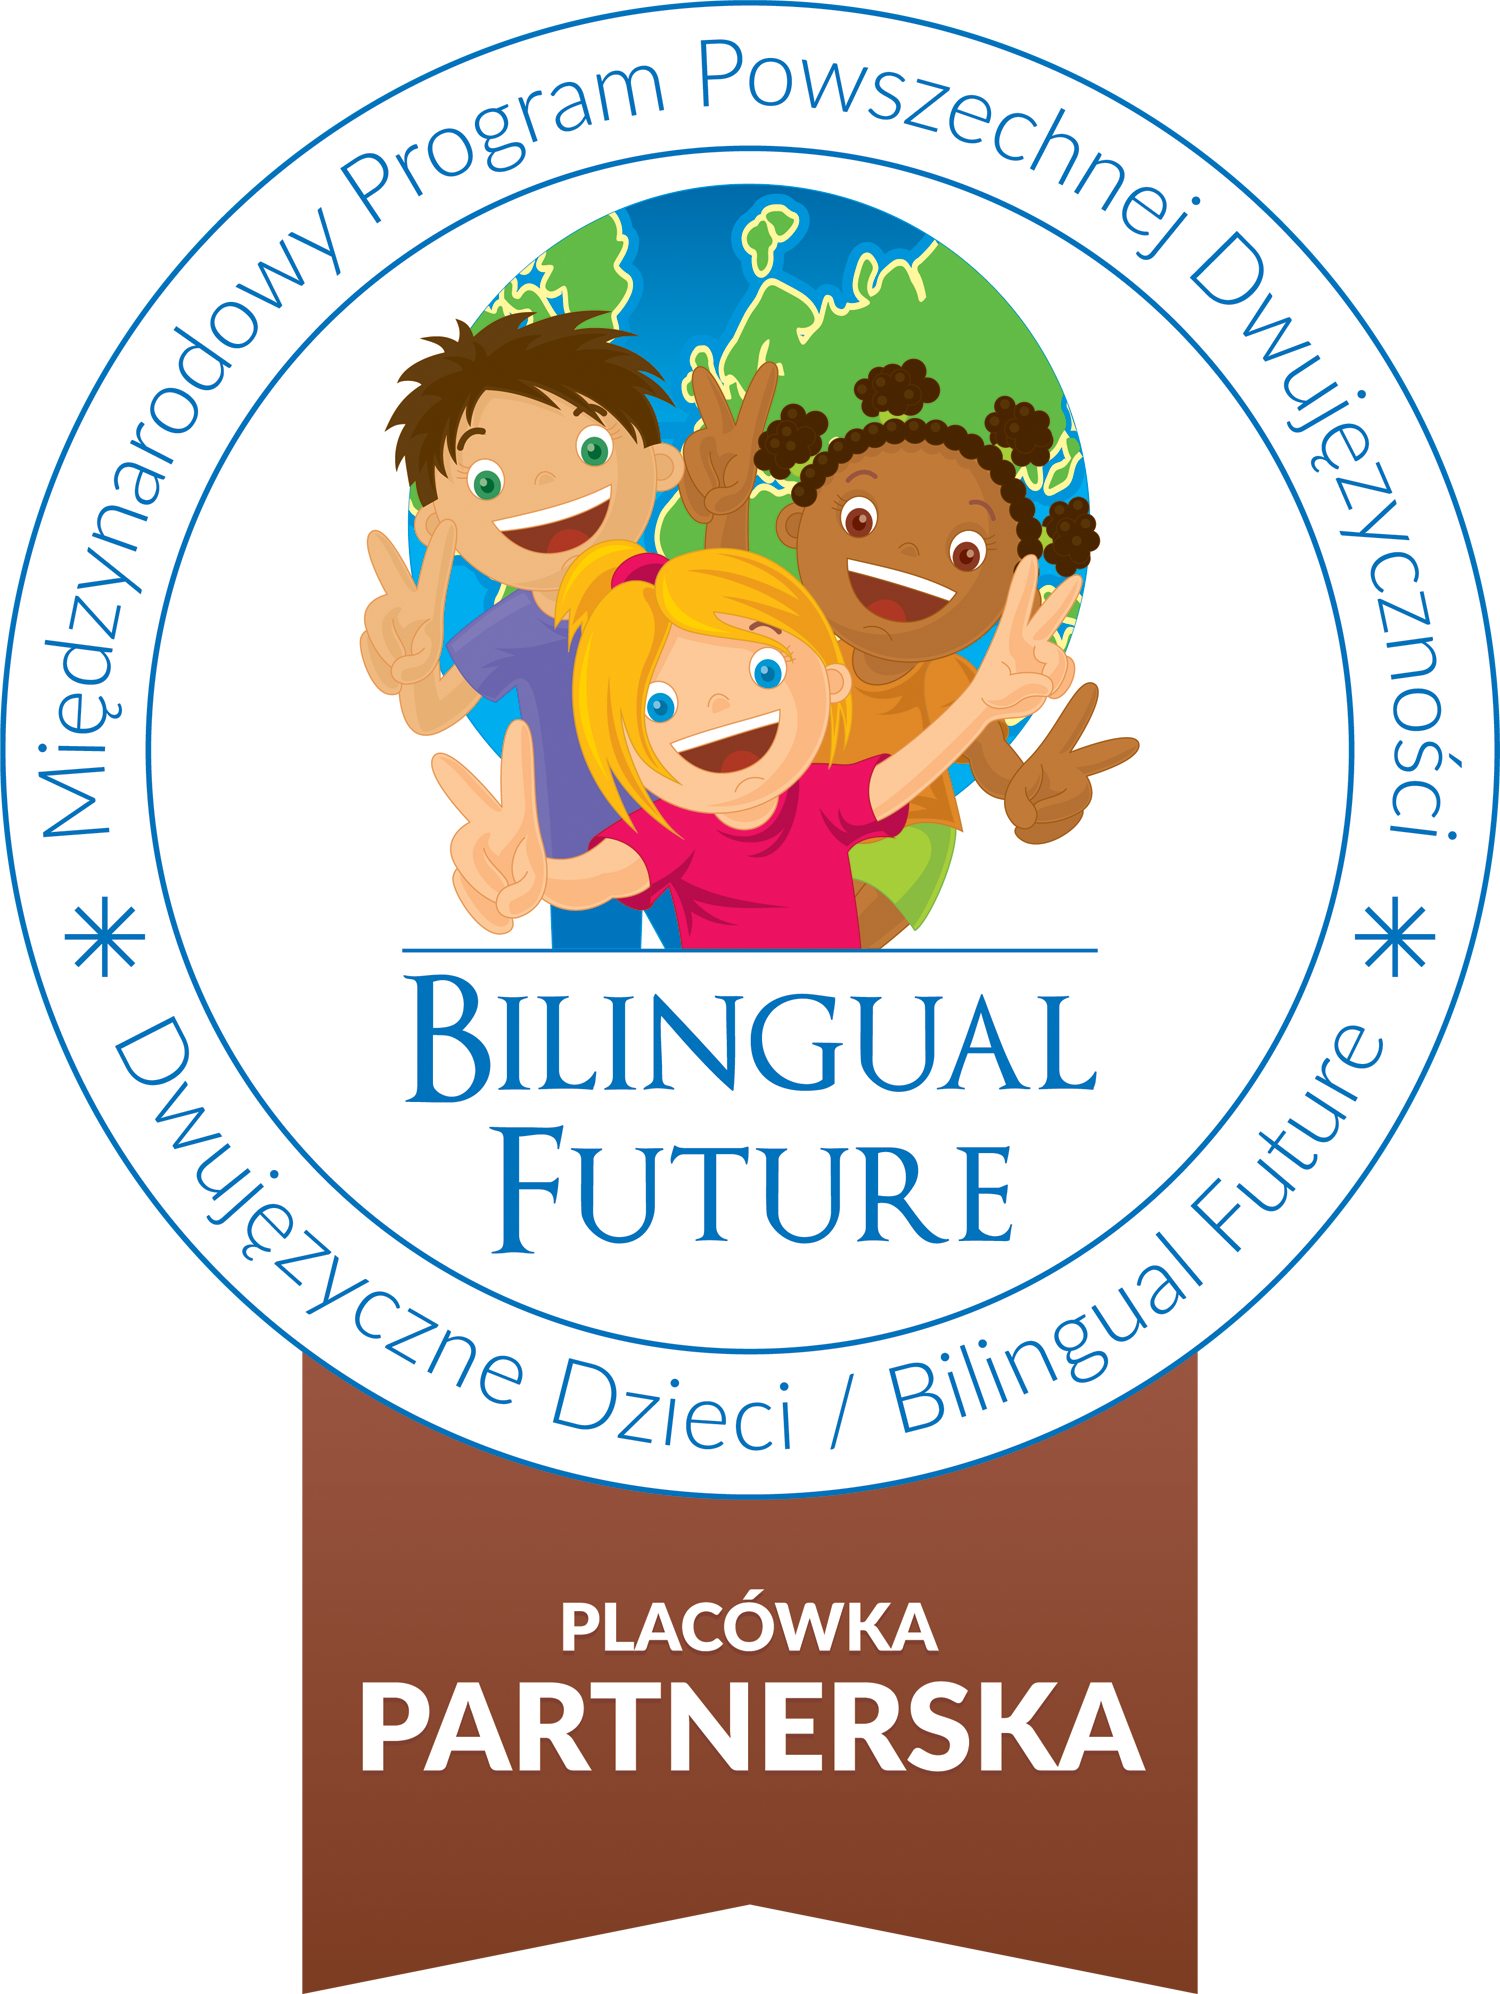 Placówka partnerska Programu Powszechnej Dwujęzyczności